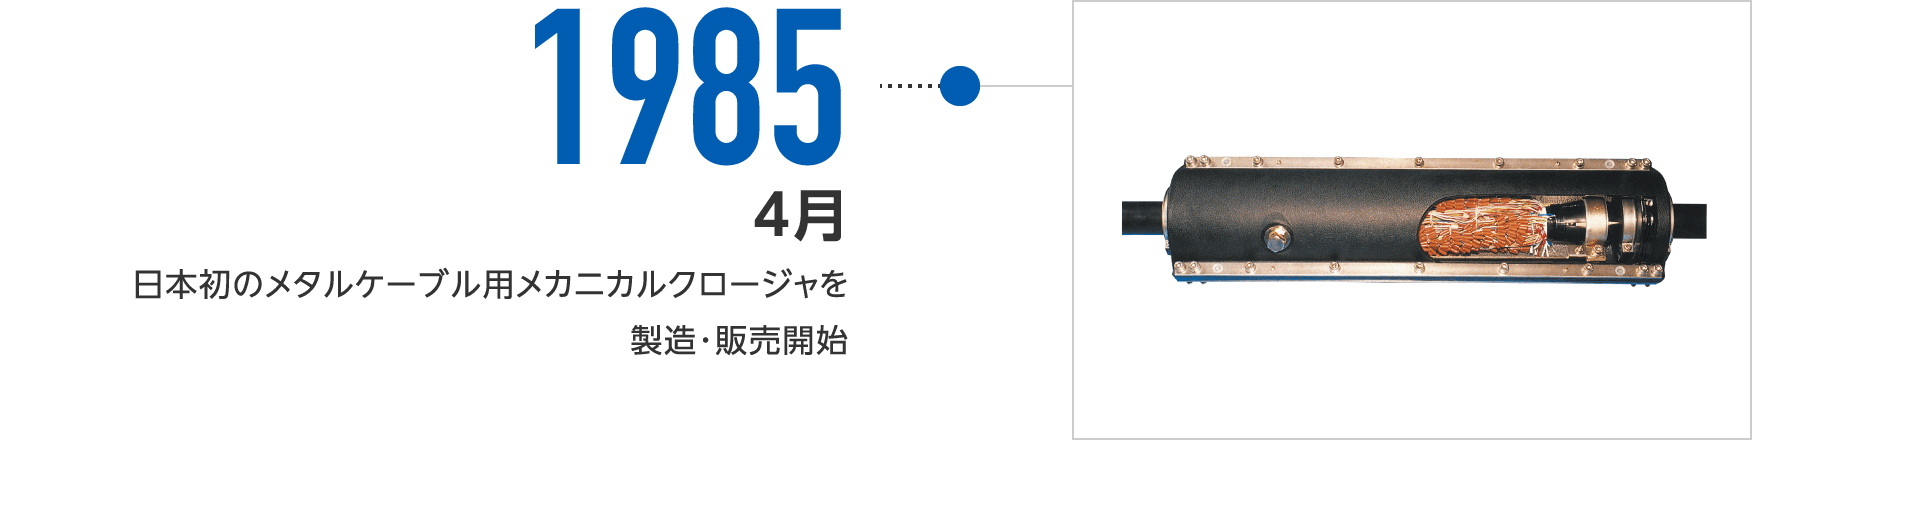 1985年4月-日本初のメタルケーブル用メカニカルクロージャを製造・販売開始